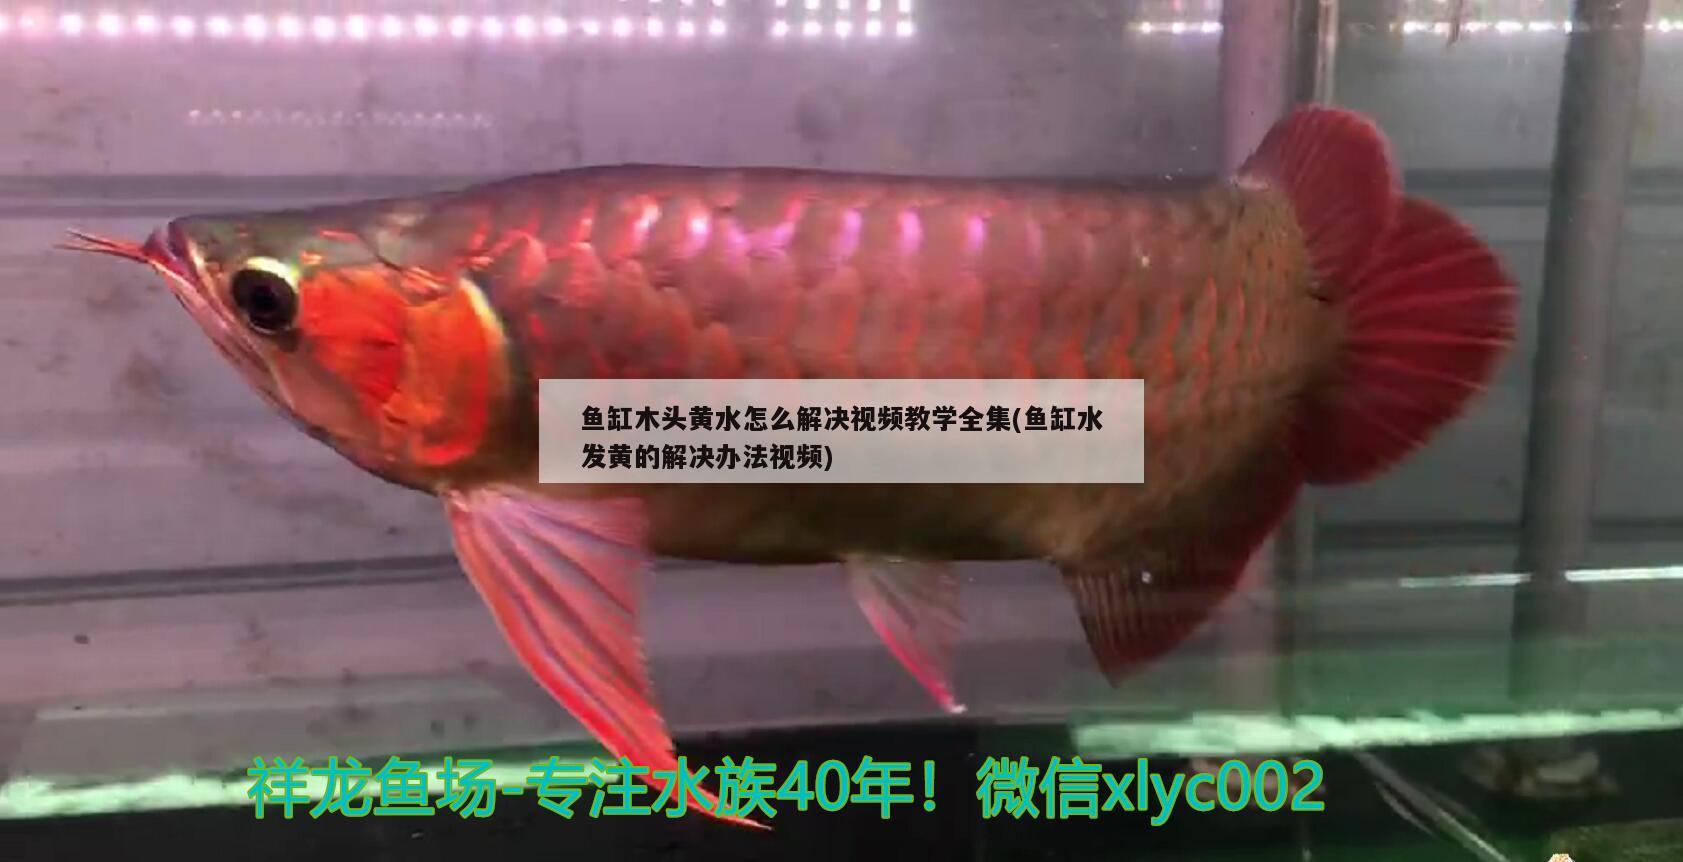 鱼缸木头黄水怎么解决视频教学全集(鱼缸水发黄的解决办法视频) 红勾银版鱼